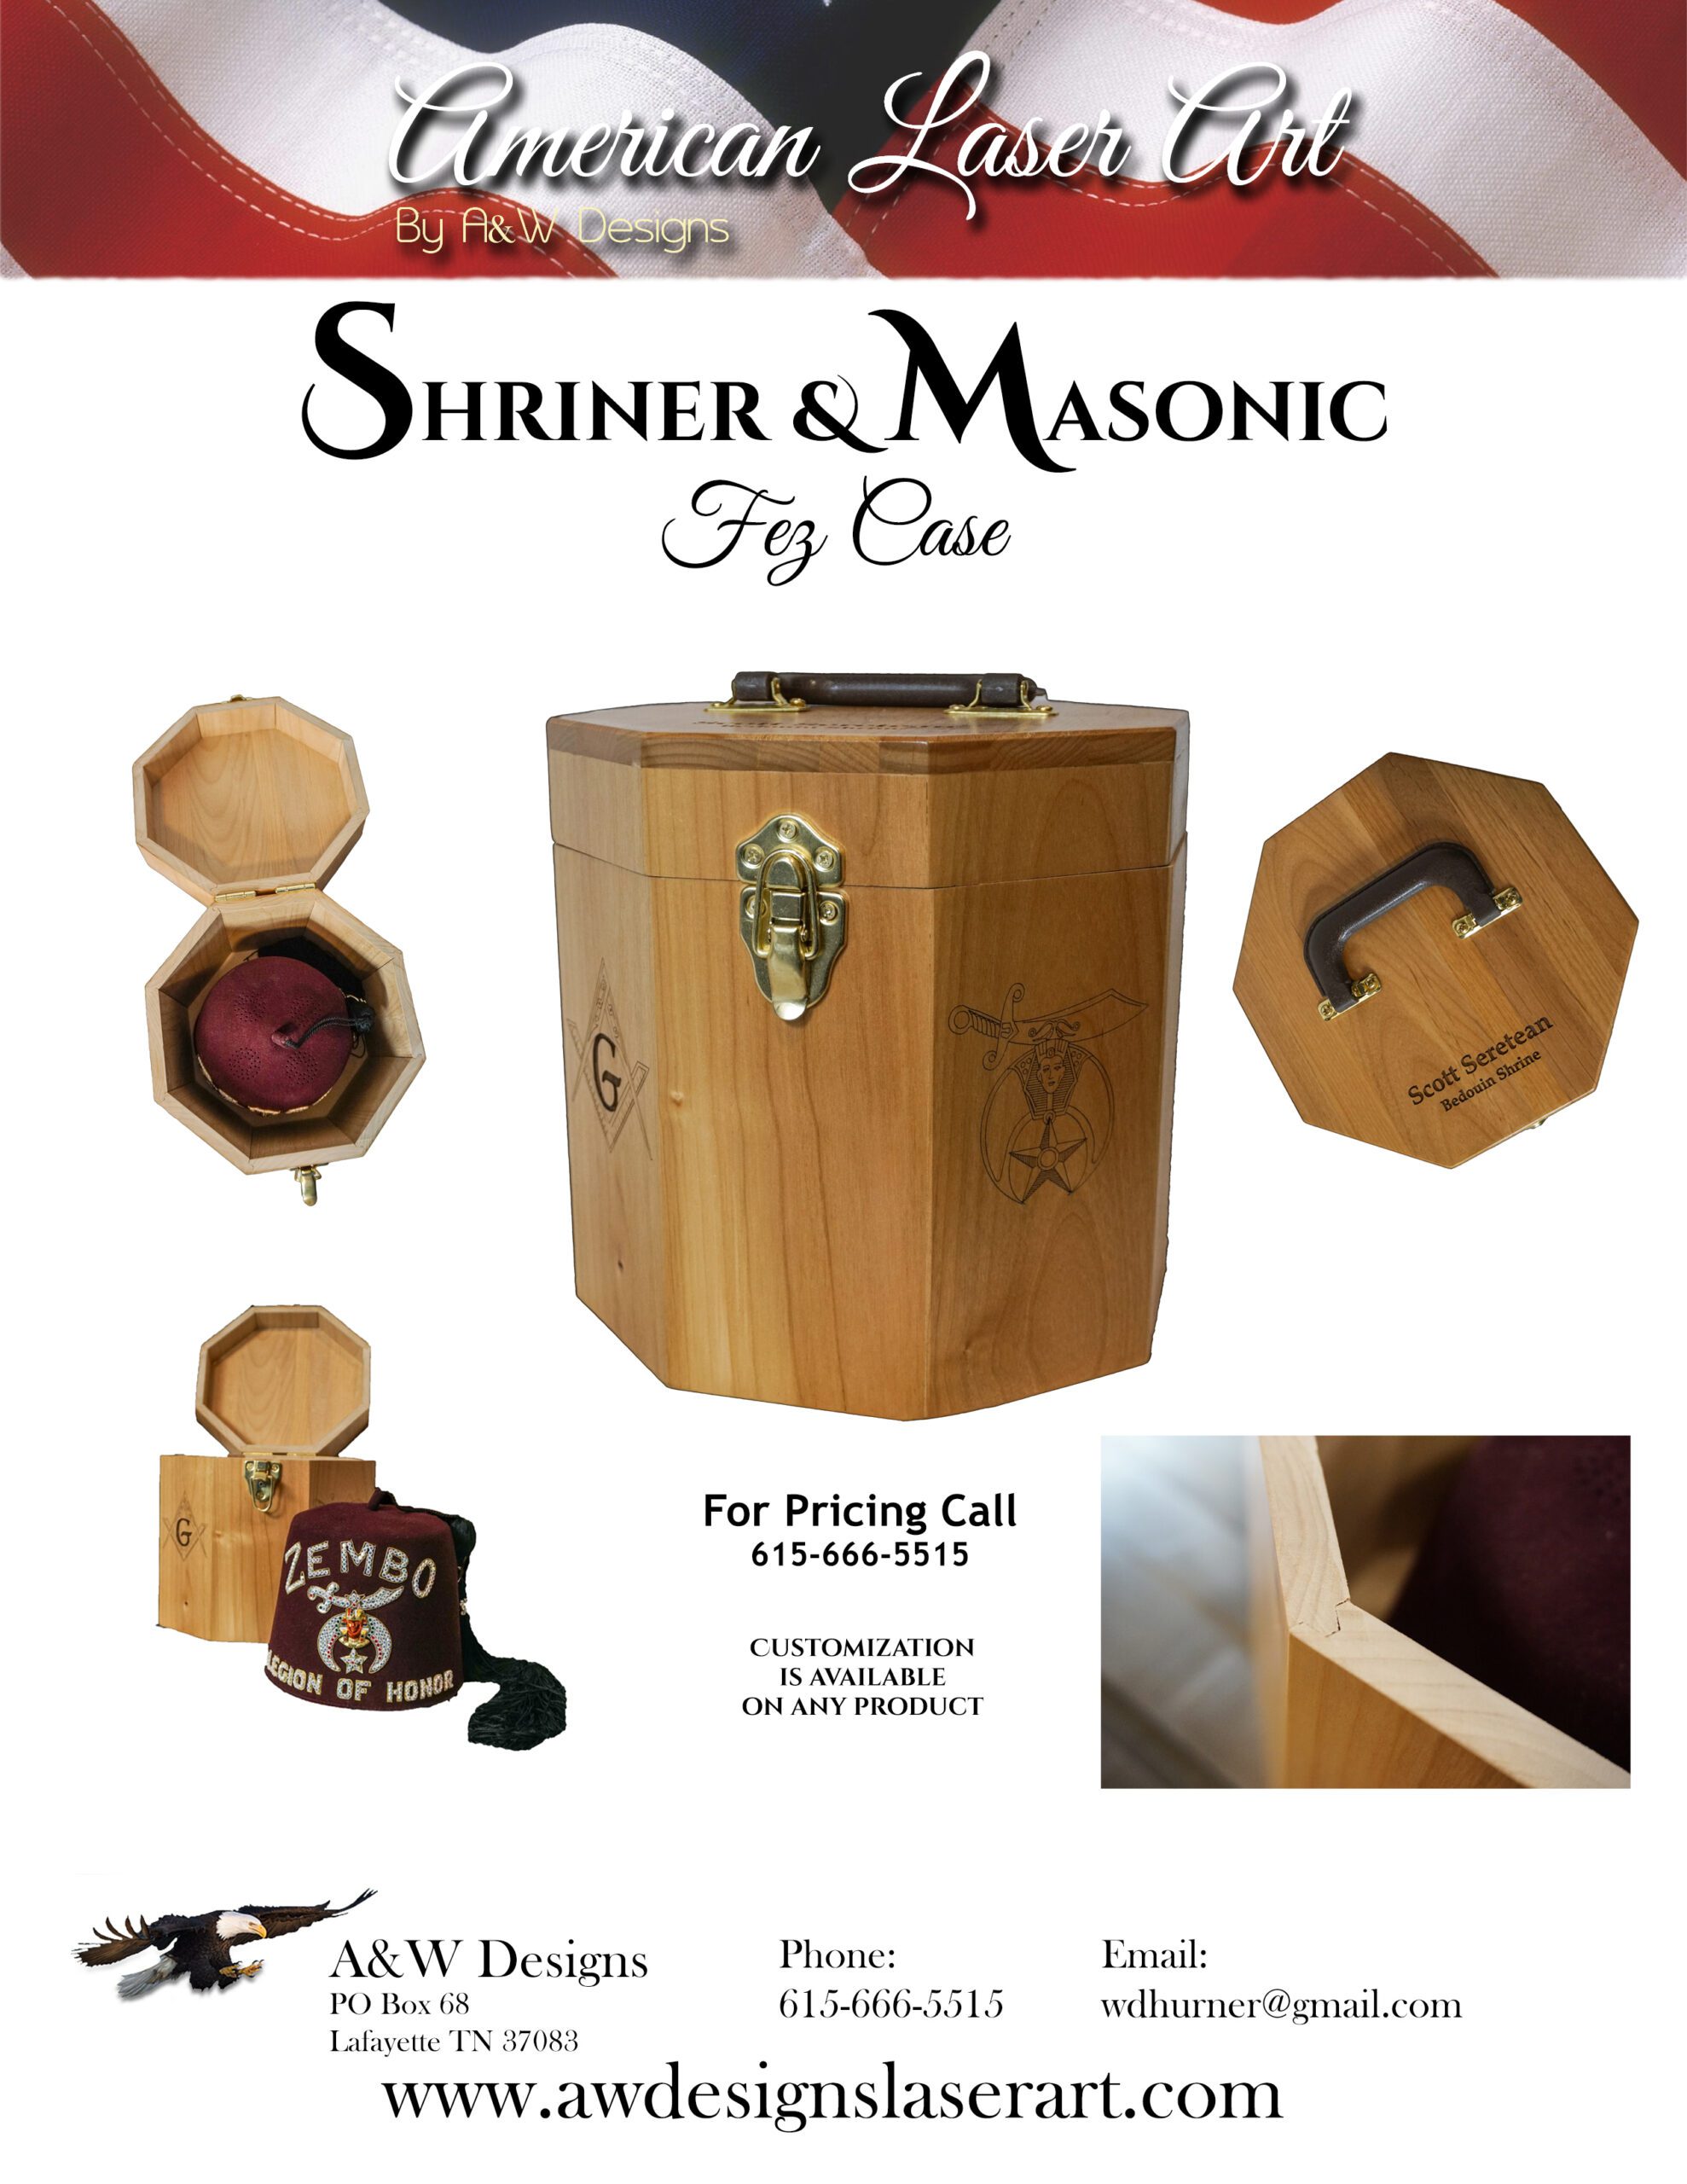 Shriner and Masonic Fez Case